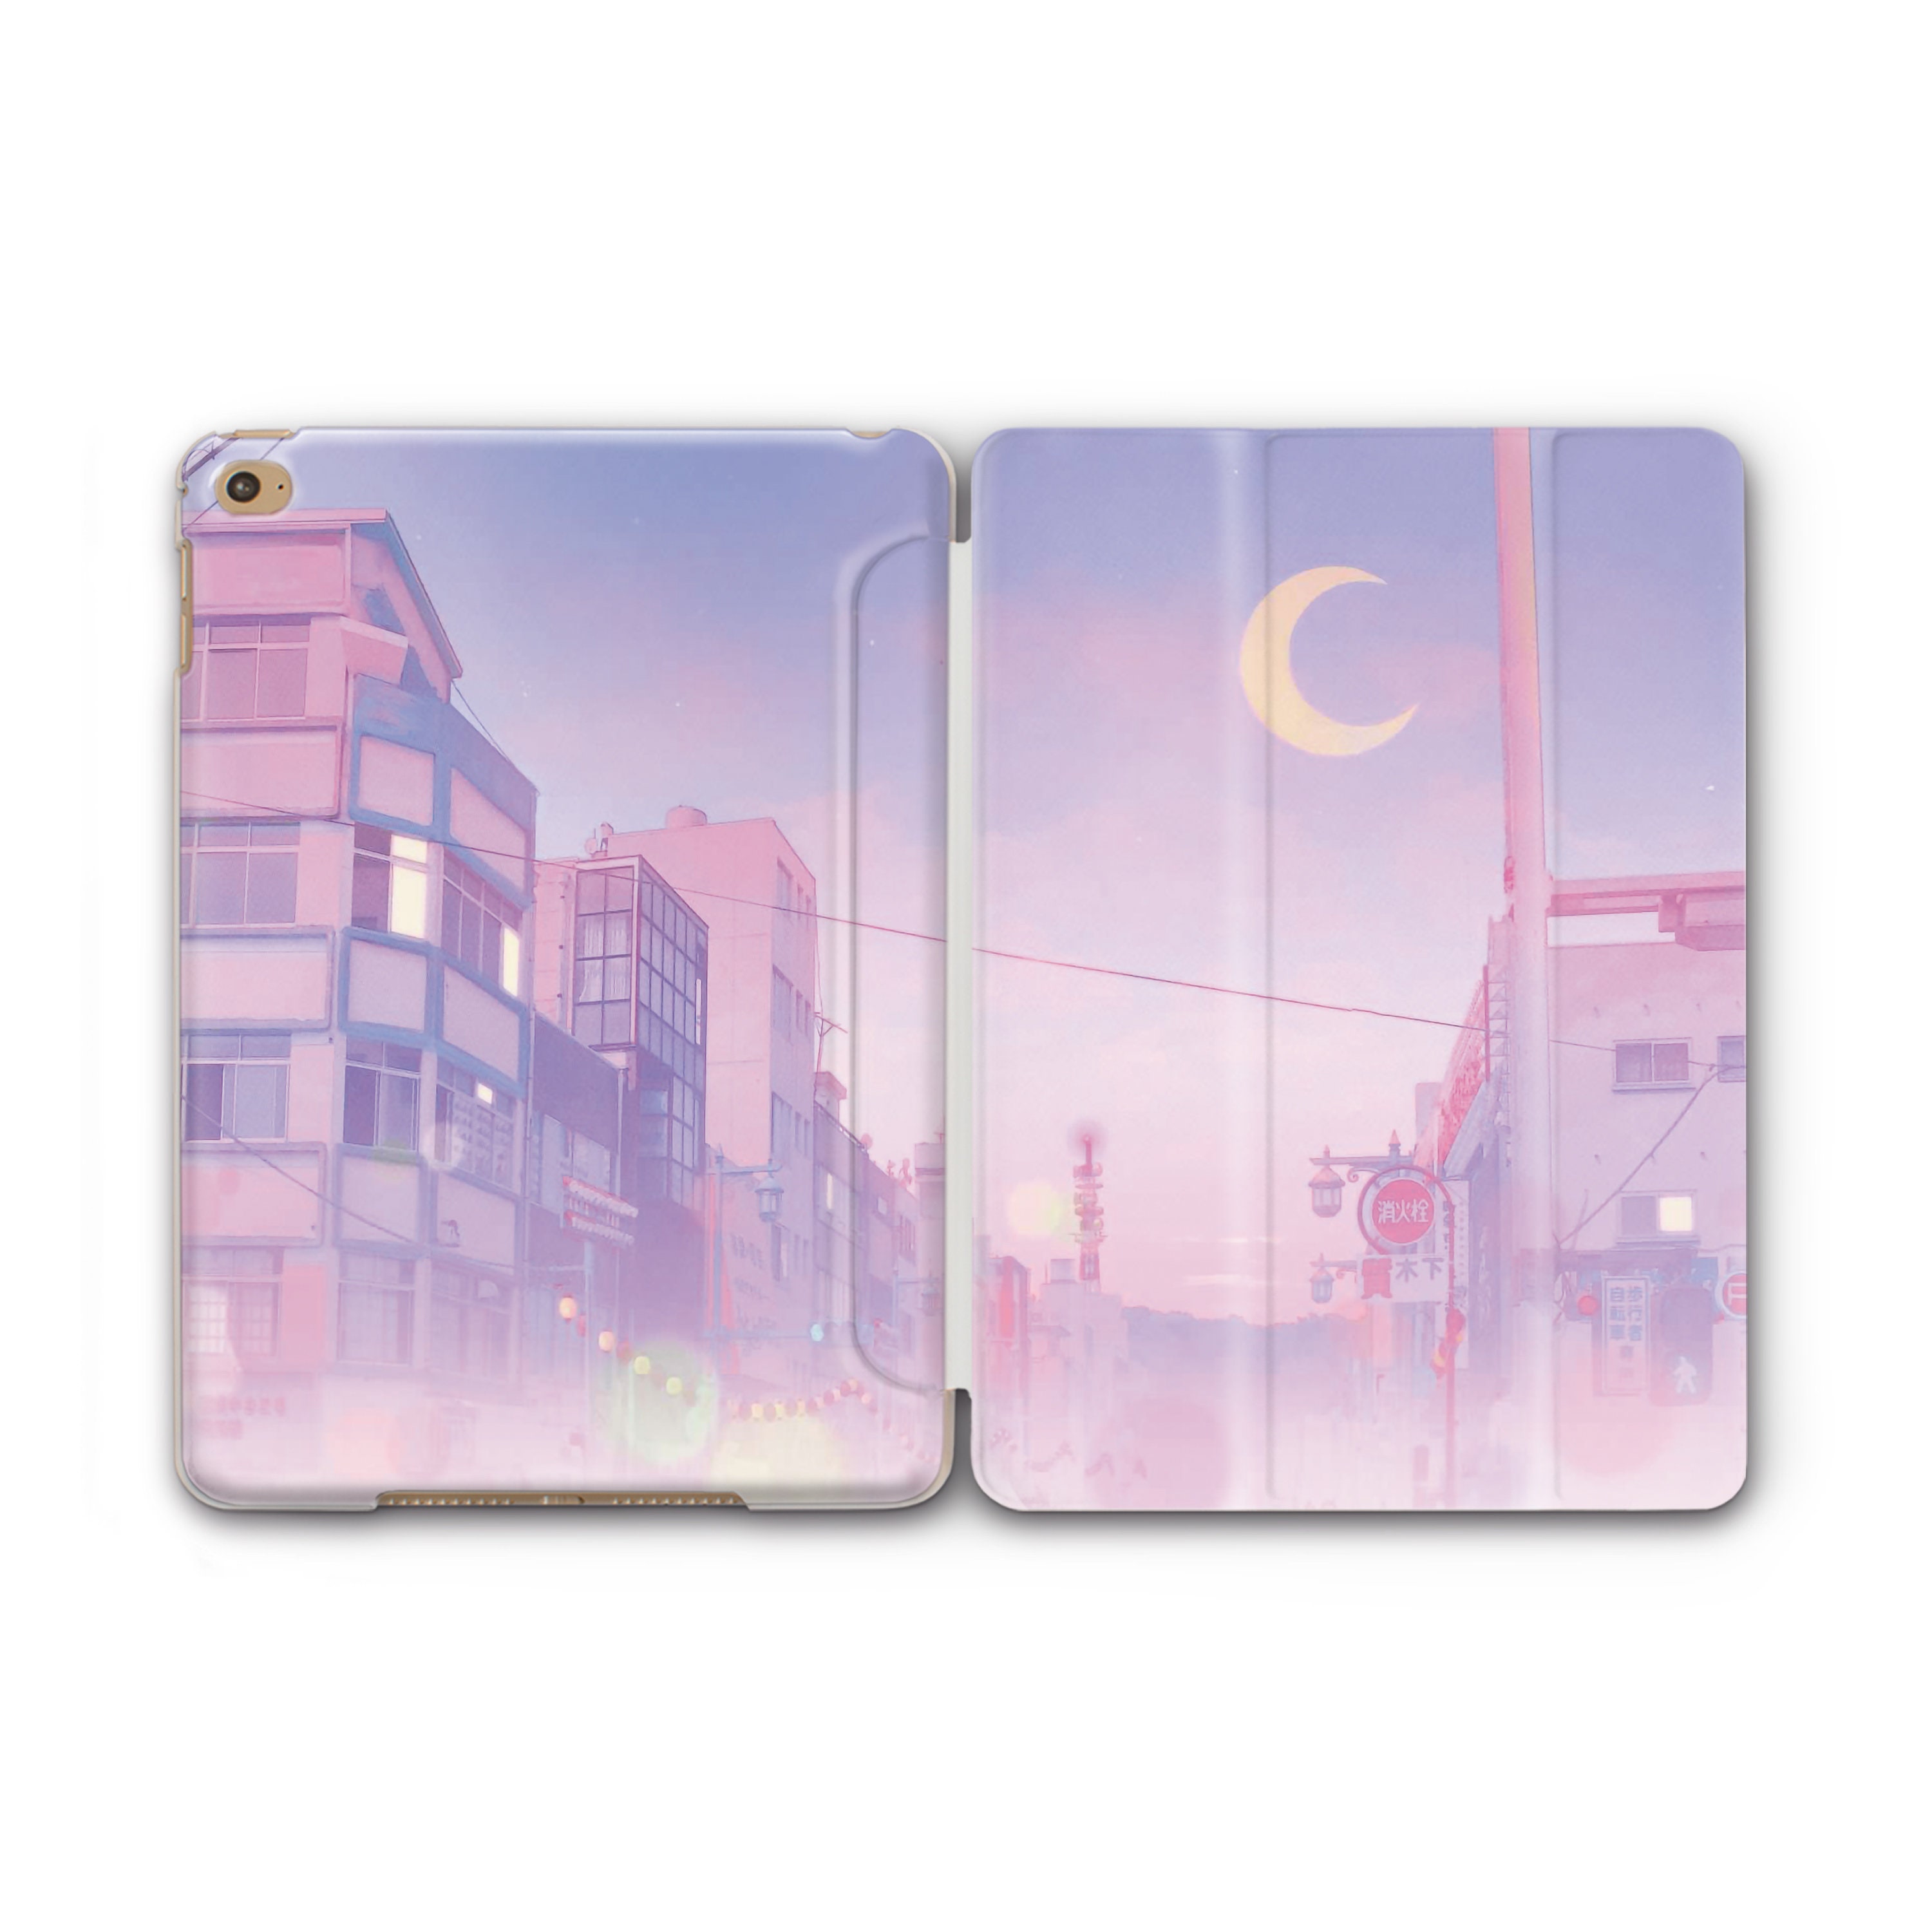 Fnaf Anime iPad Cases & Skins for Sale